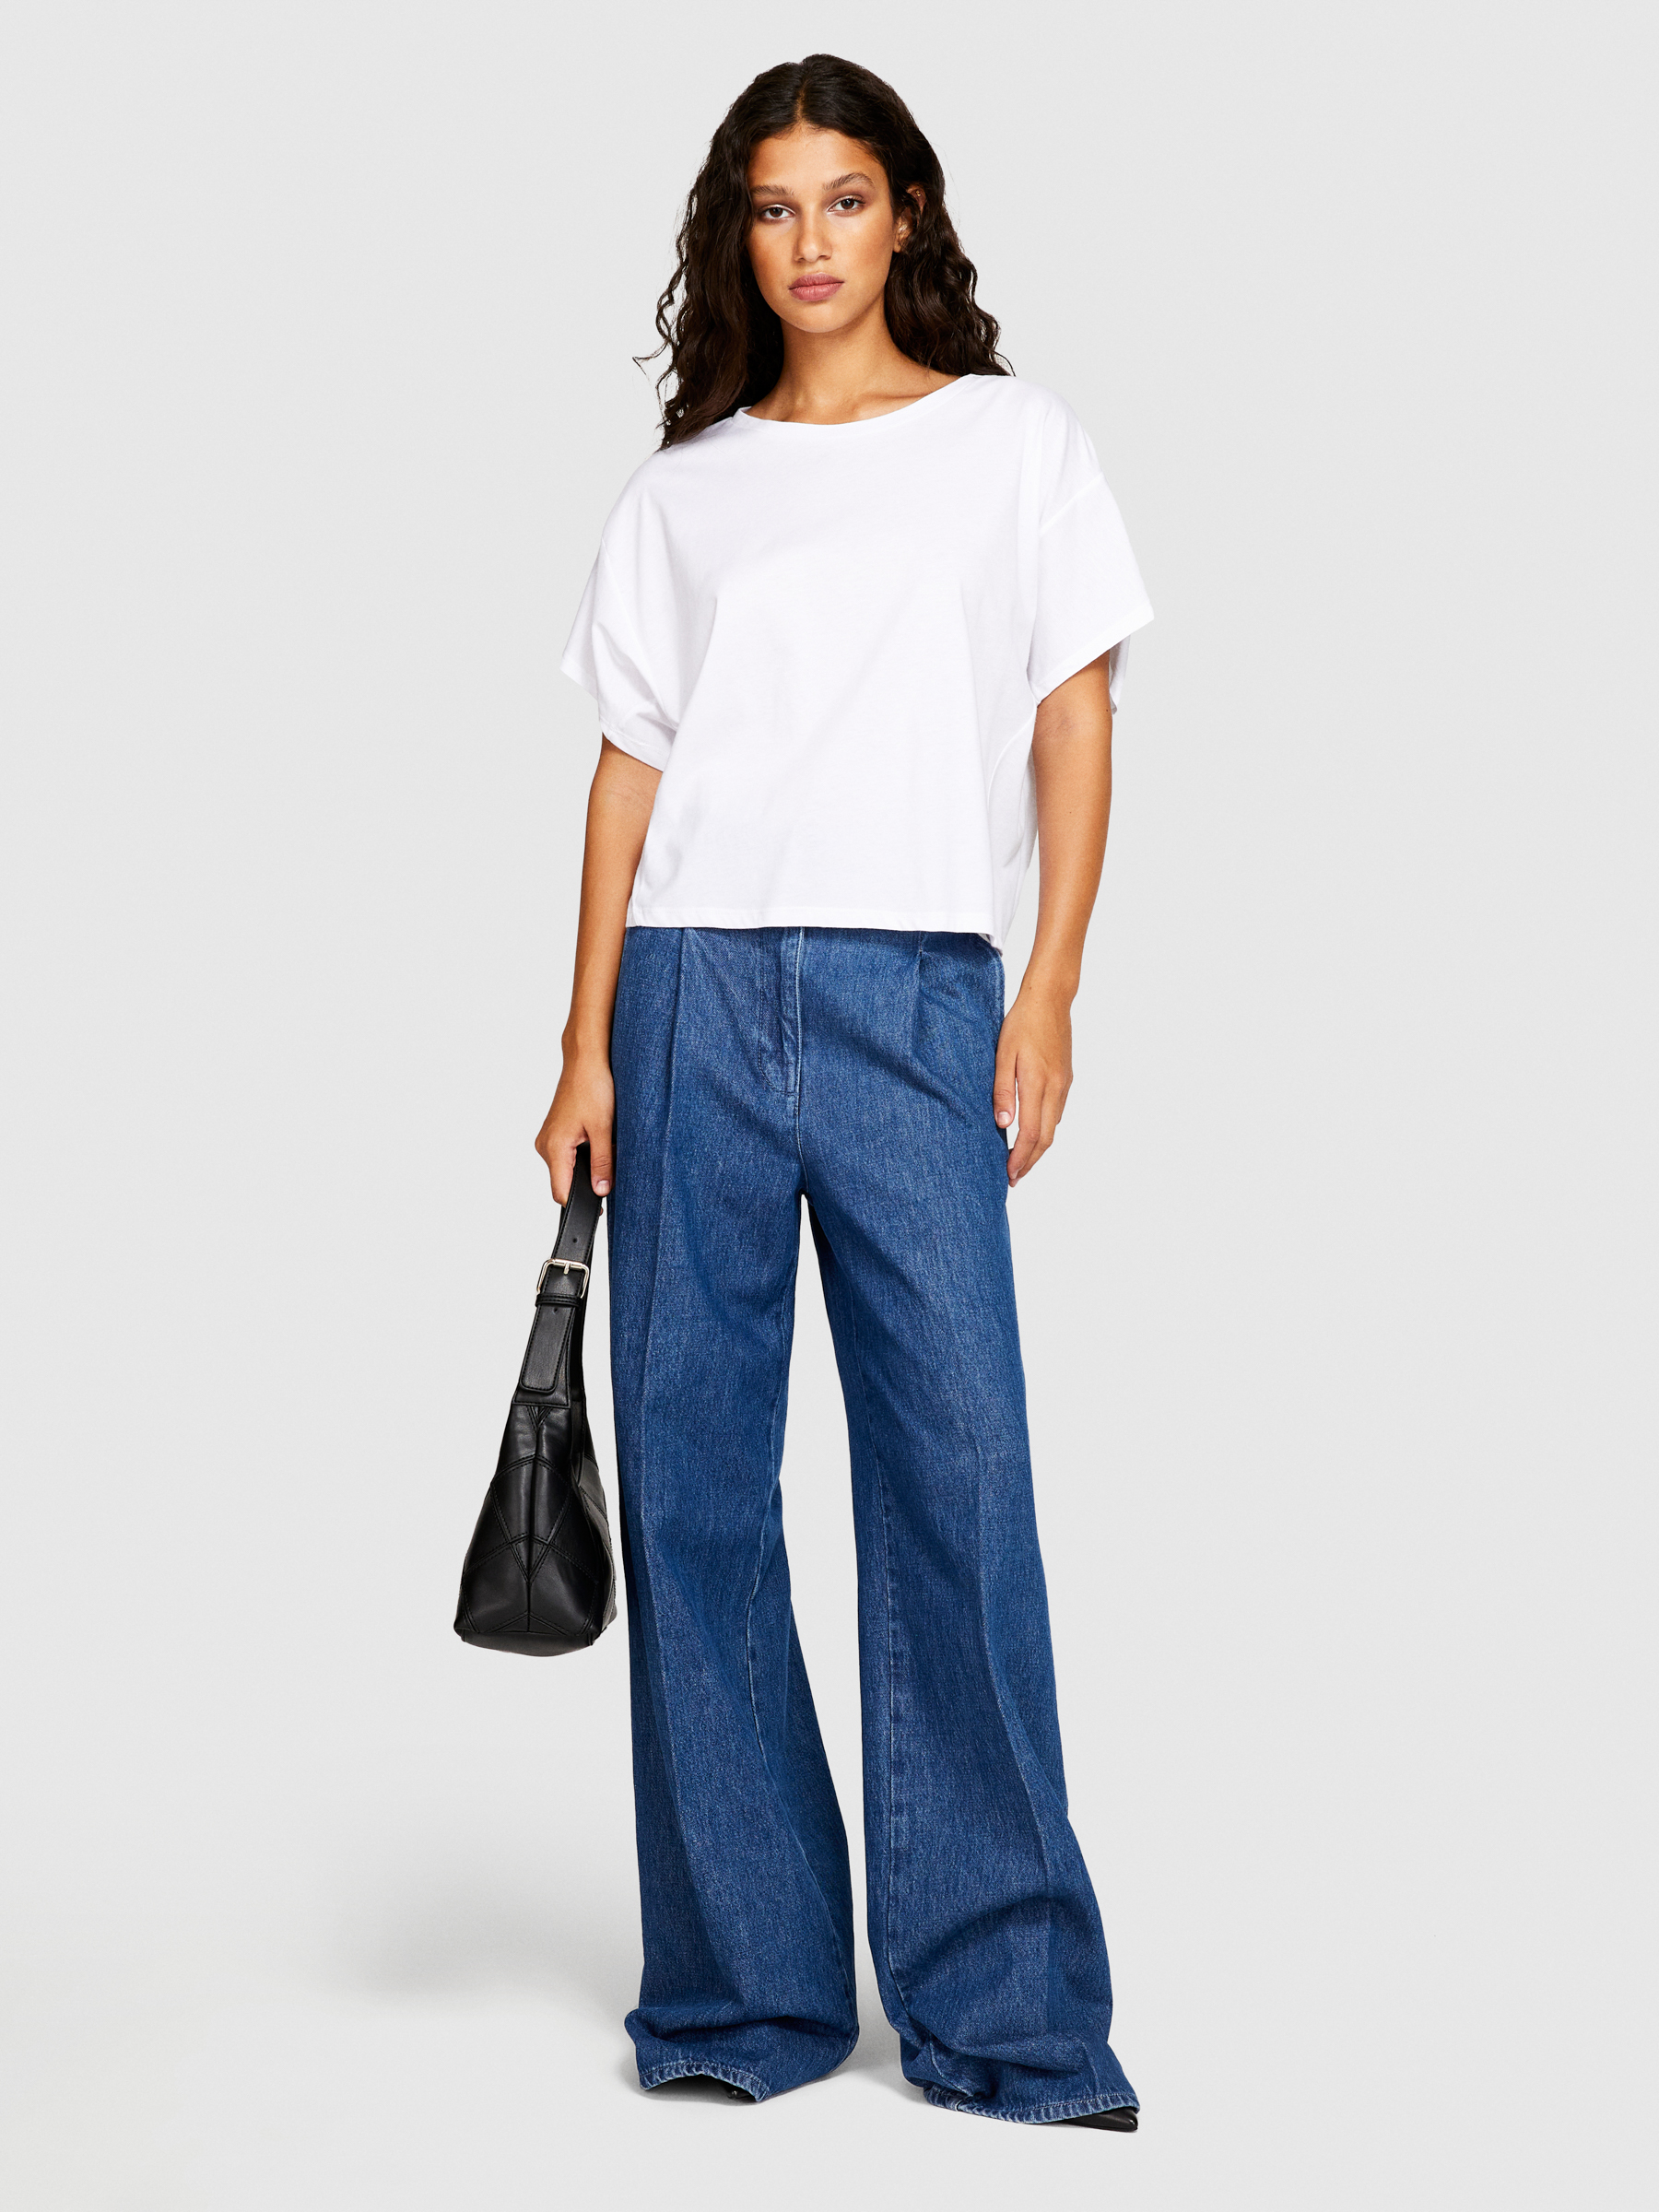 Sisley - Boxy Fit T-shirt, Woman, White, Size: L